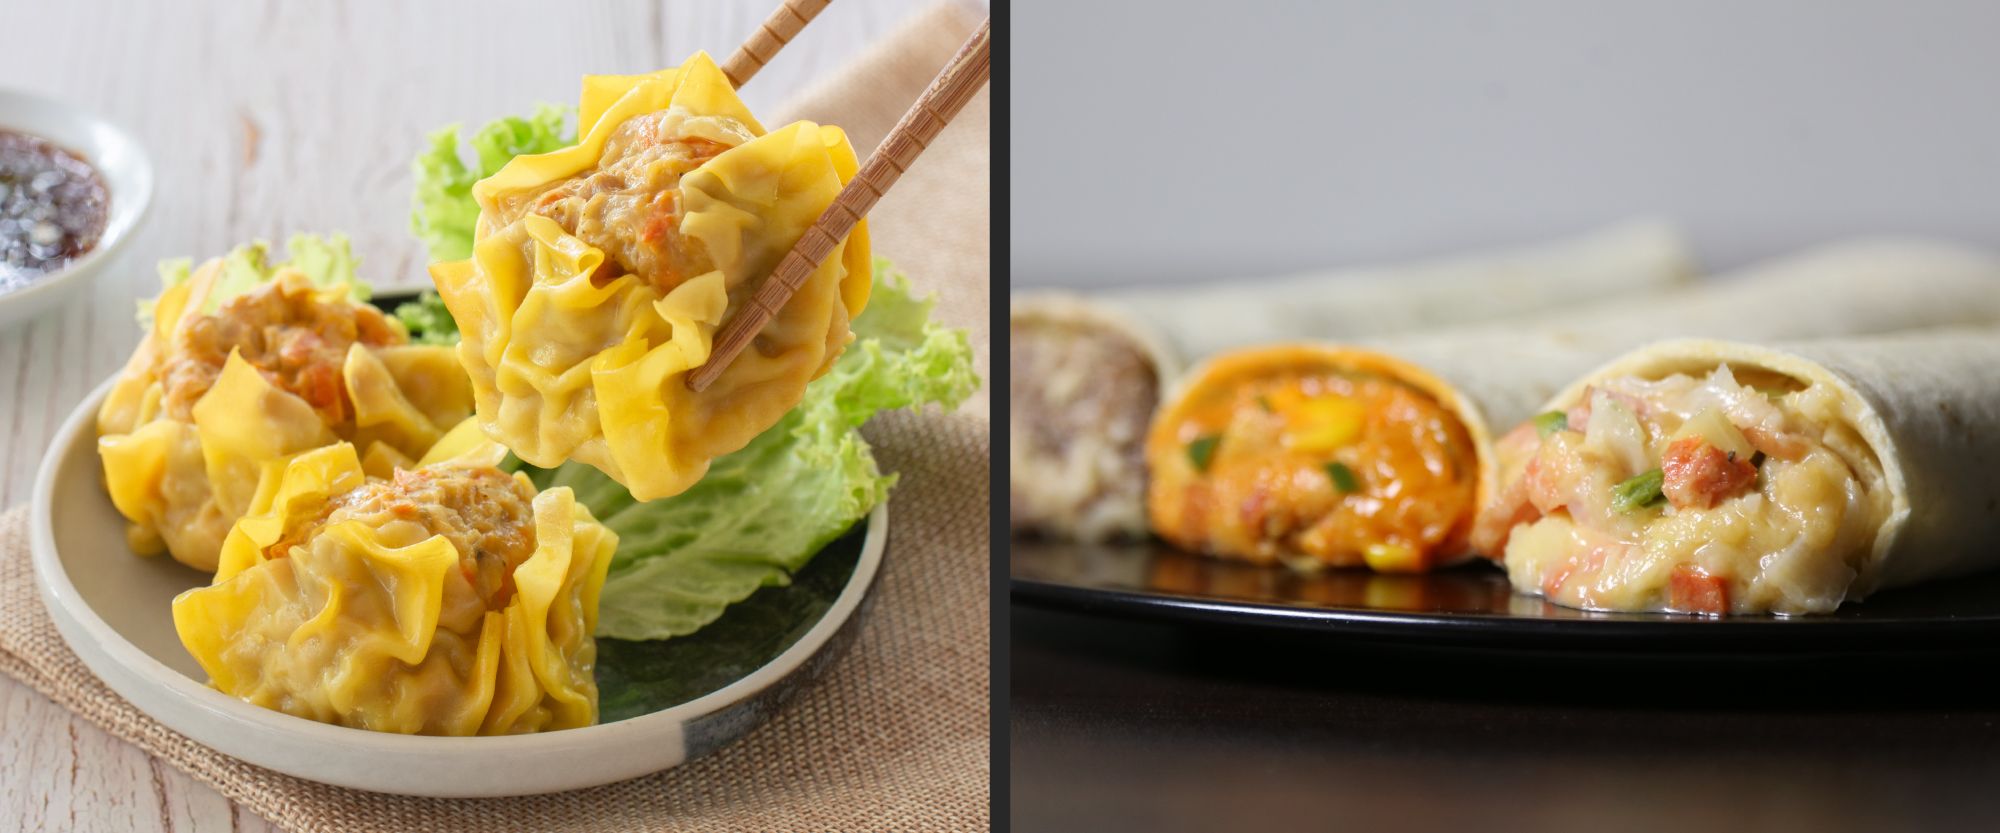 ANKO-Autolla-syöminen-shumai-burrito